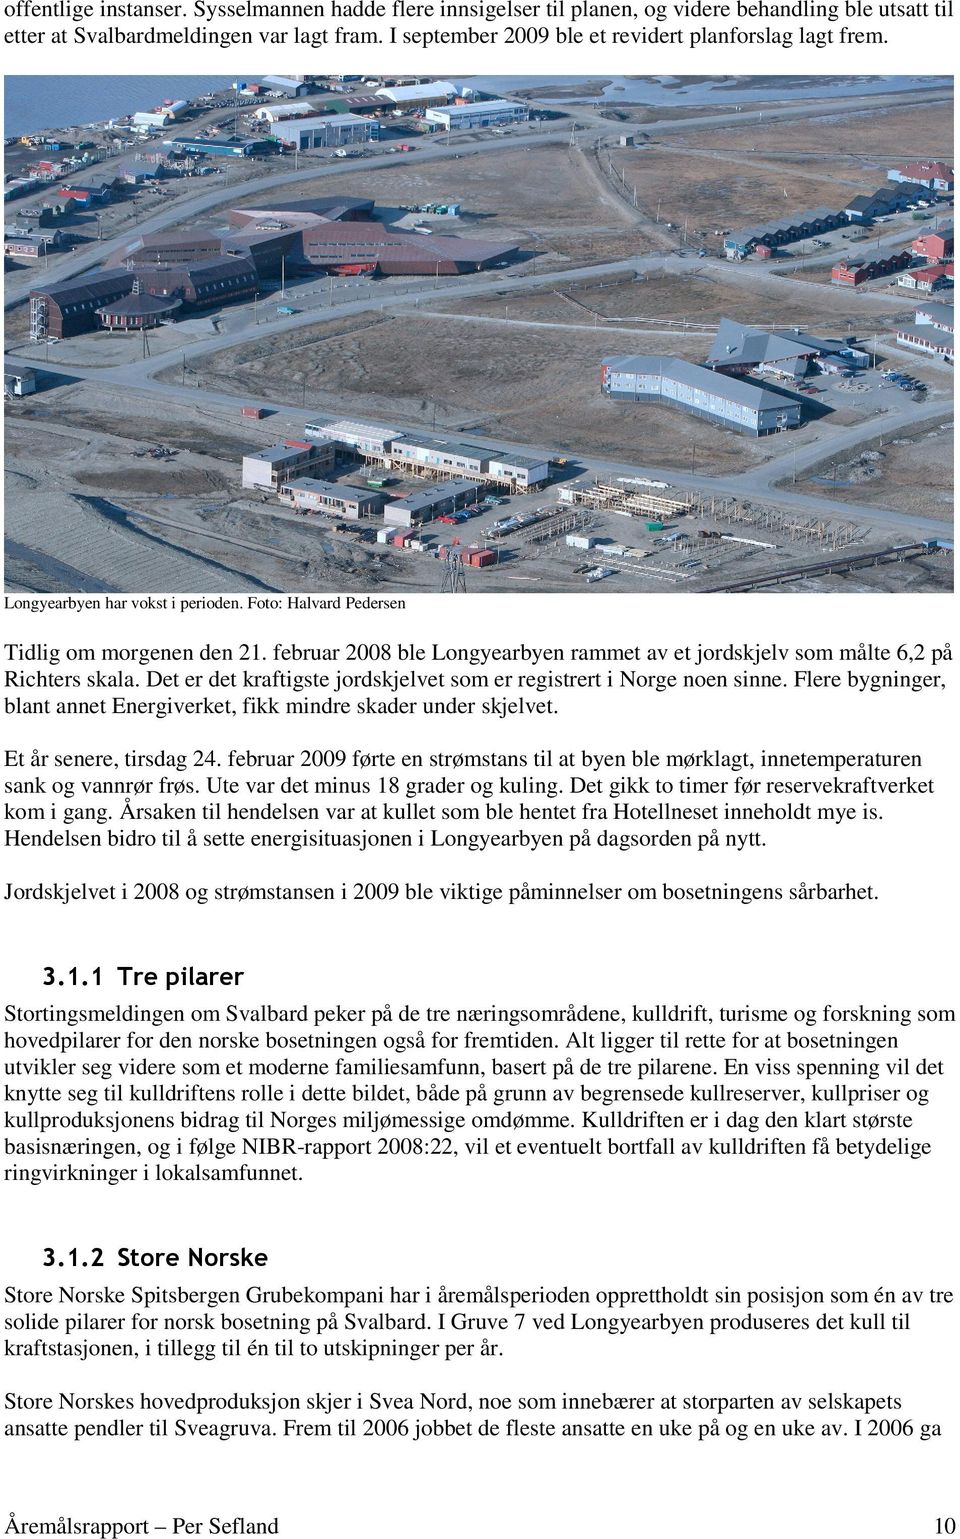 februar 2008 ble Longyearbyen rammet av et jordskjelv som målte 6,2 på Richters skala. Det er det kraftigste jordskjelvet som er registrert i Norge noen sinne.